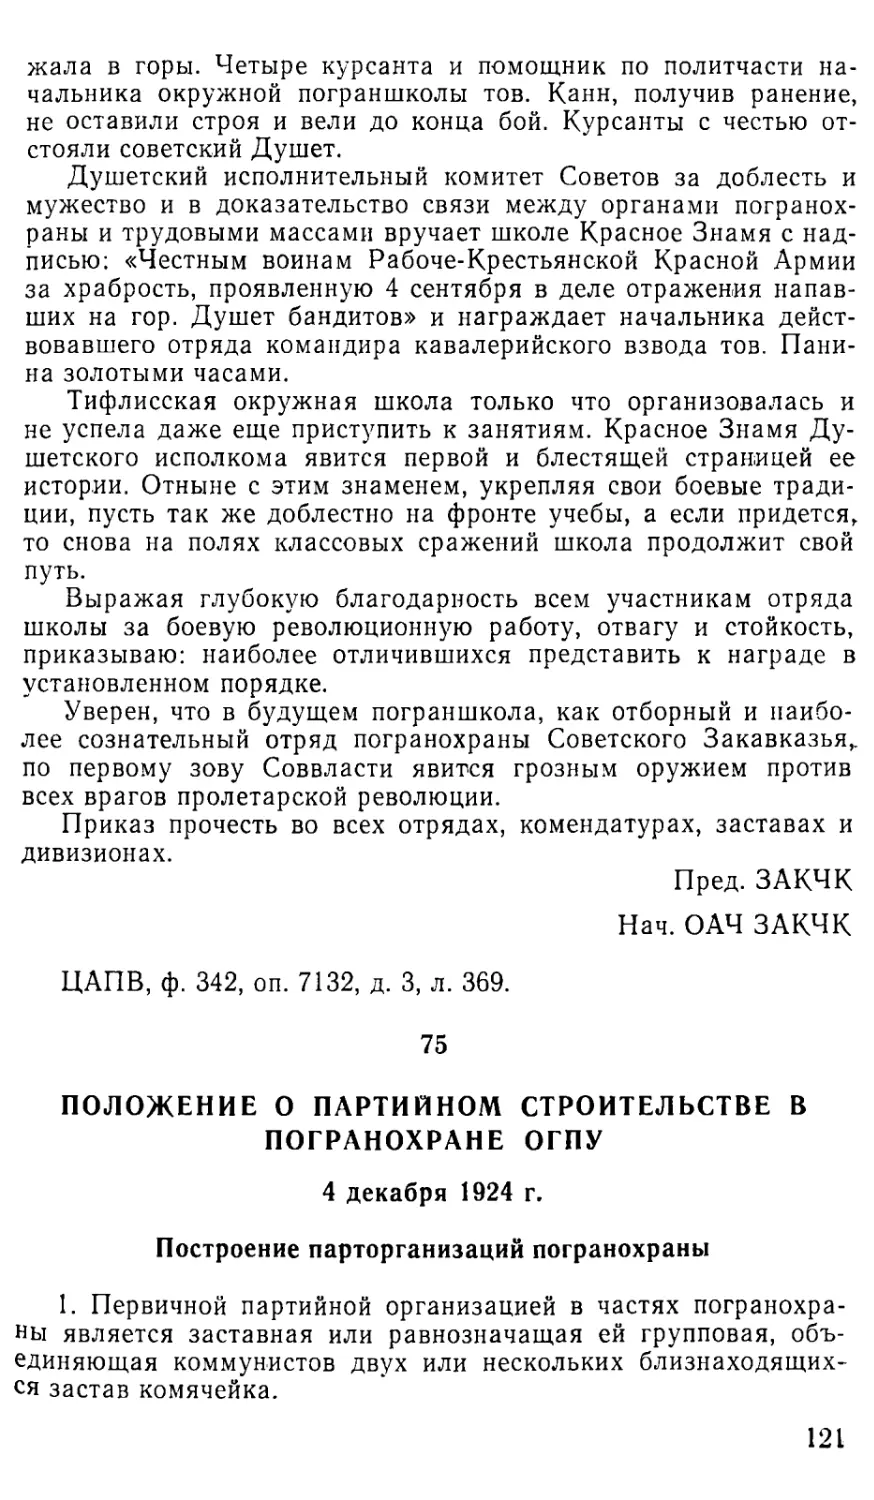 75. Положение о партийном строительстве в погранохране ОГПУ. 4 декабря 1924 г